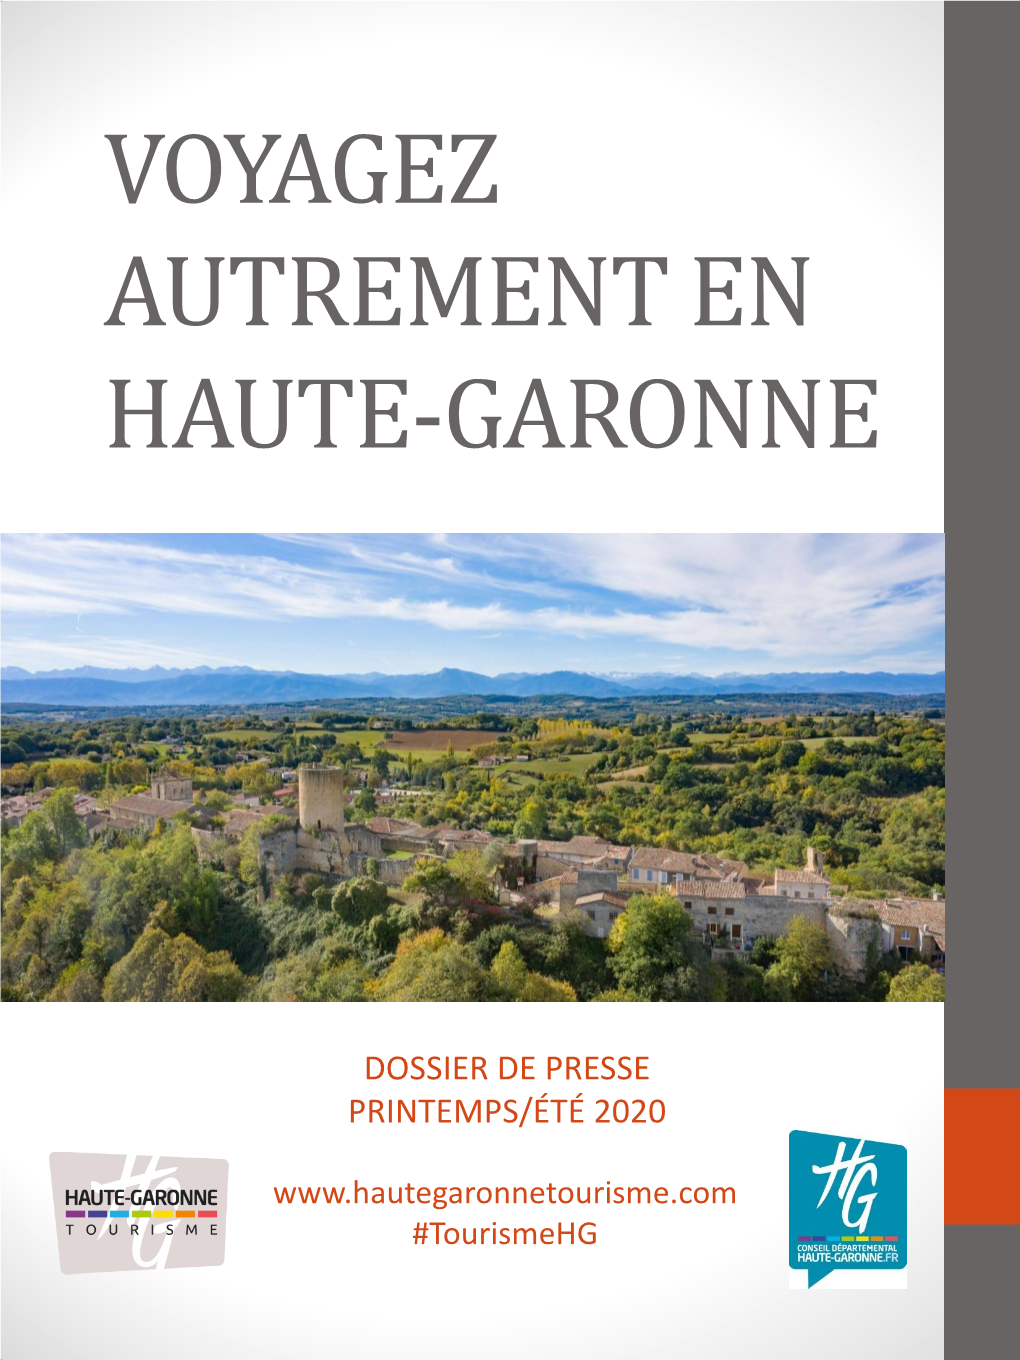 Voyagez Autrement En Haute-Garonne